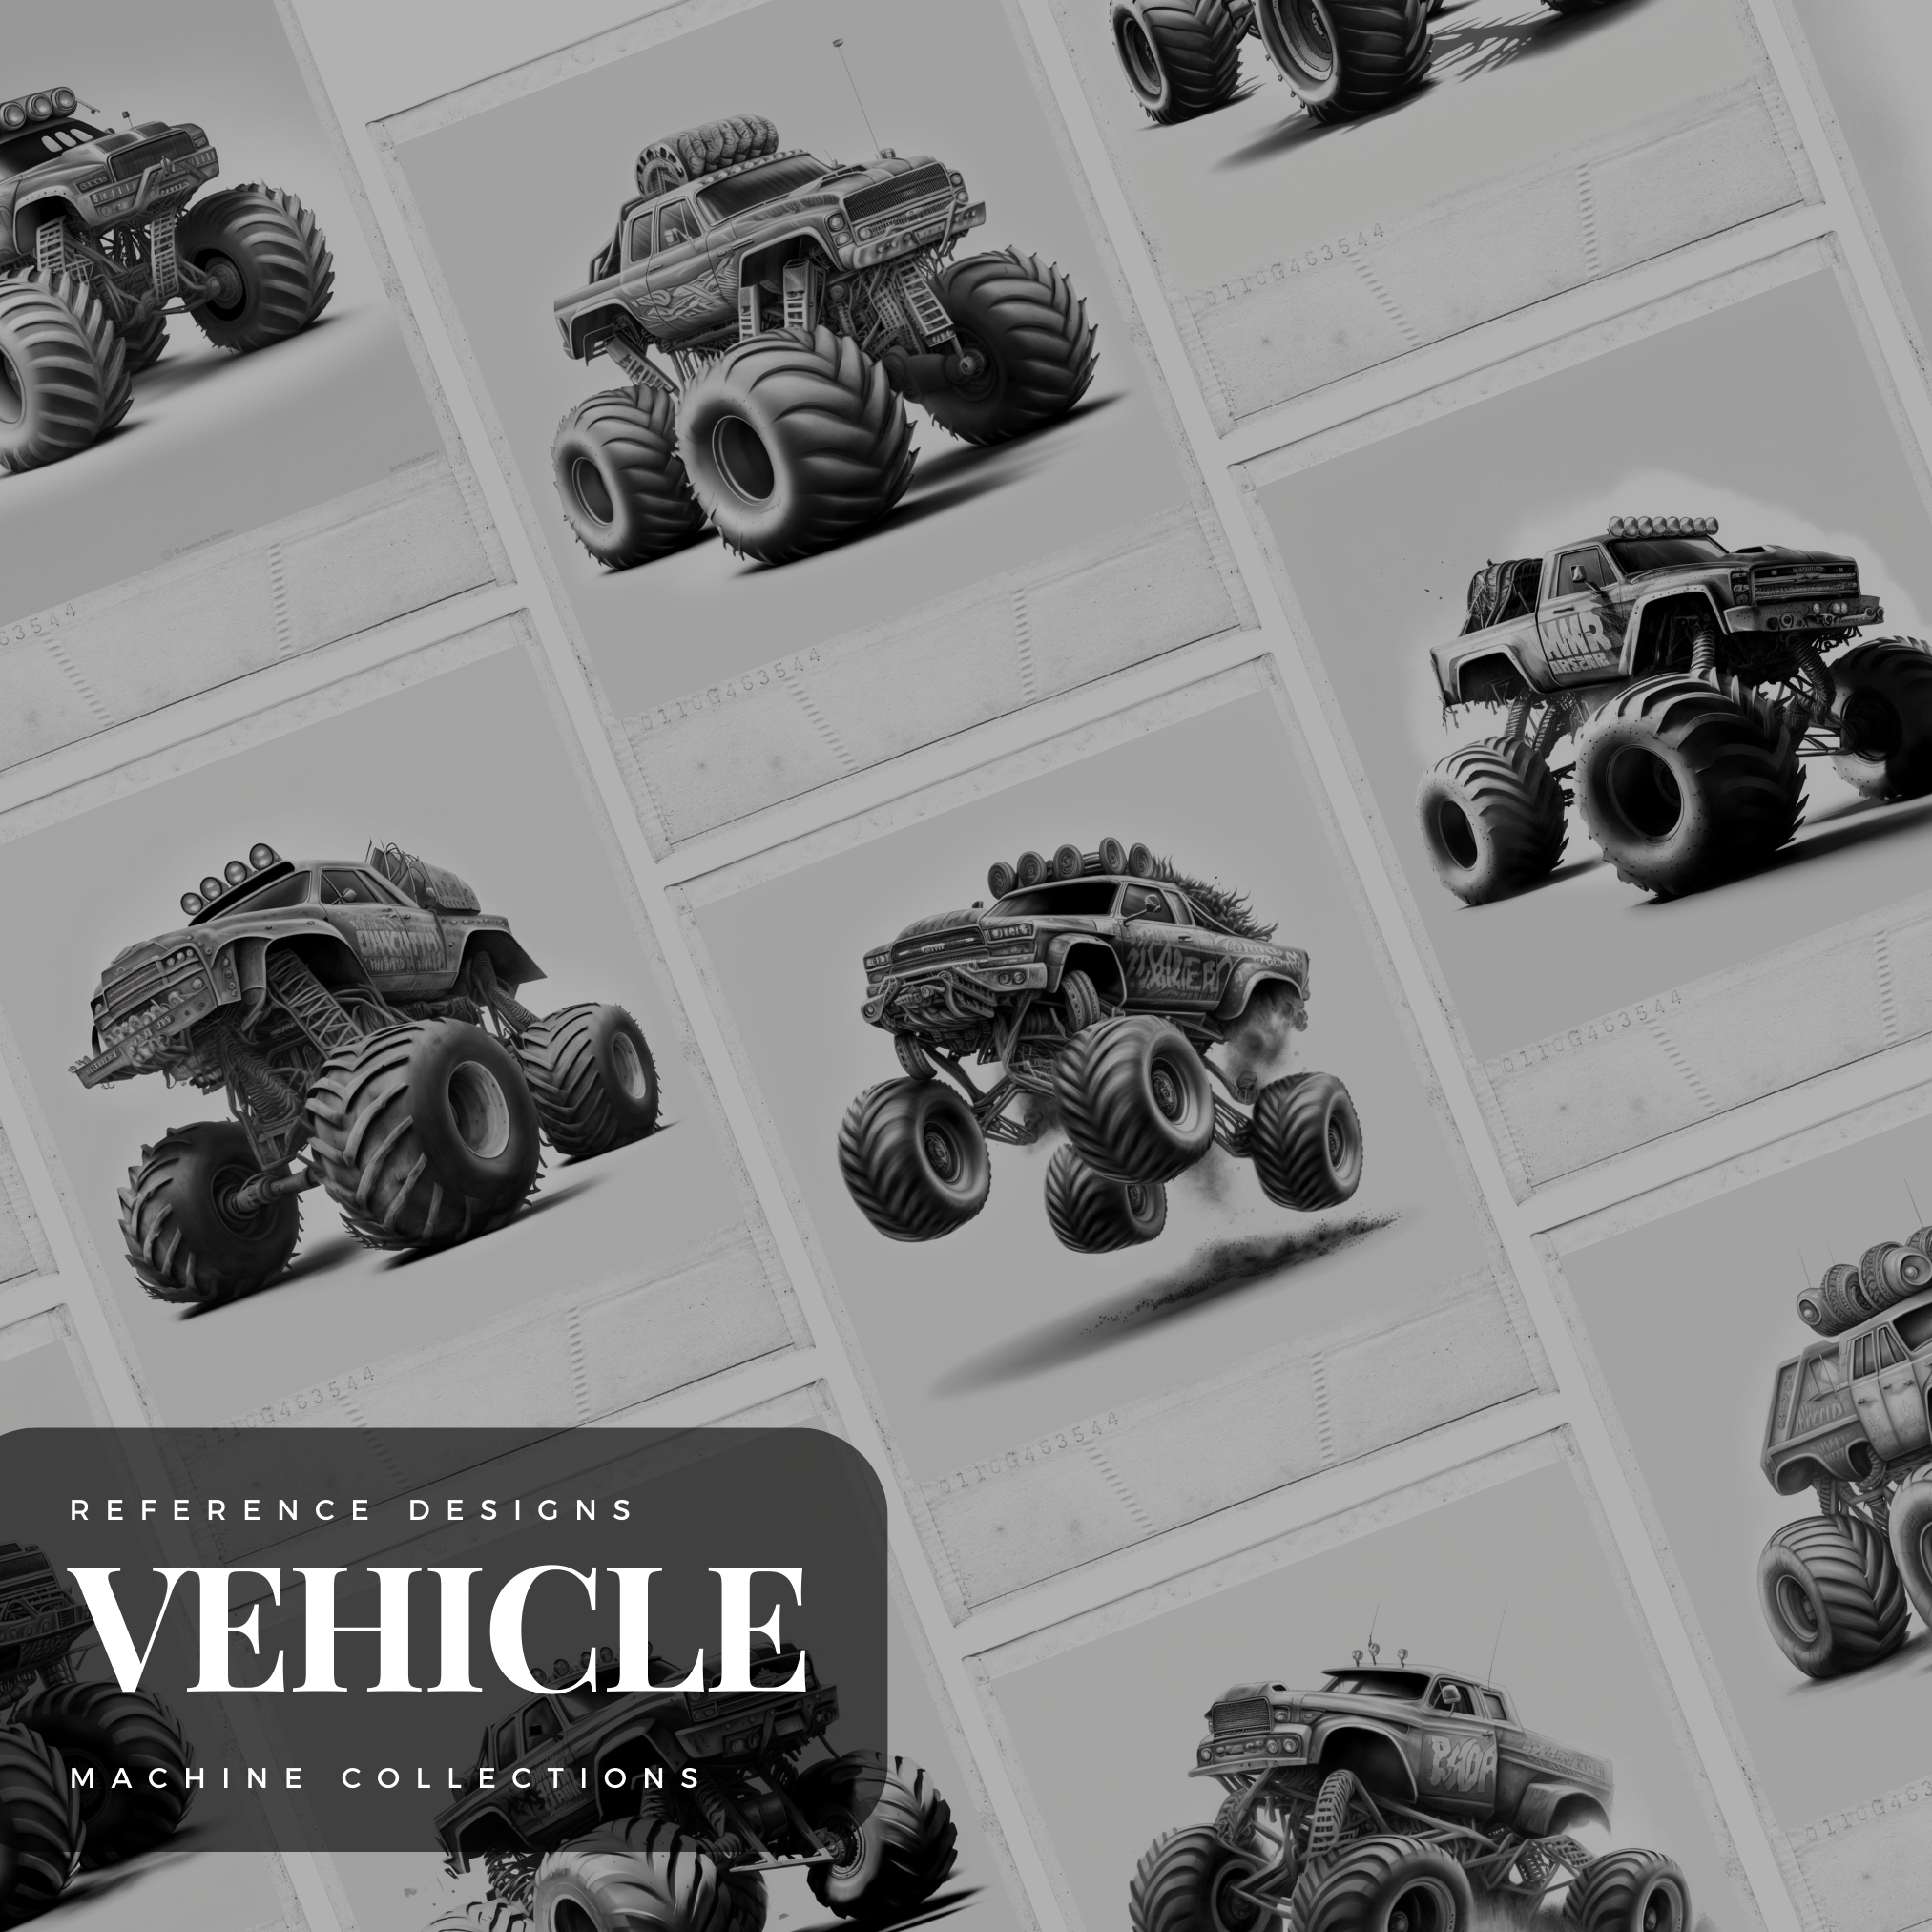 Monster Trucks Digital Design Collection: 50 Procreate & Sketchbook Images